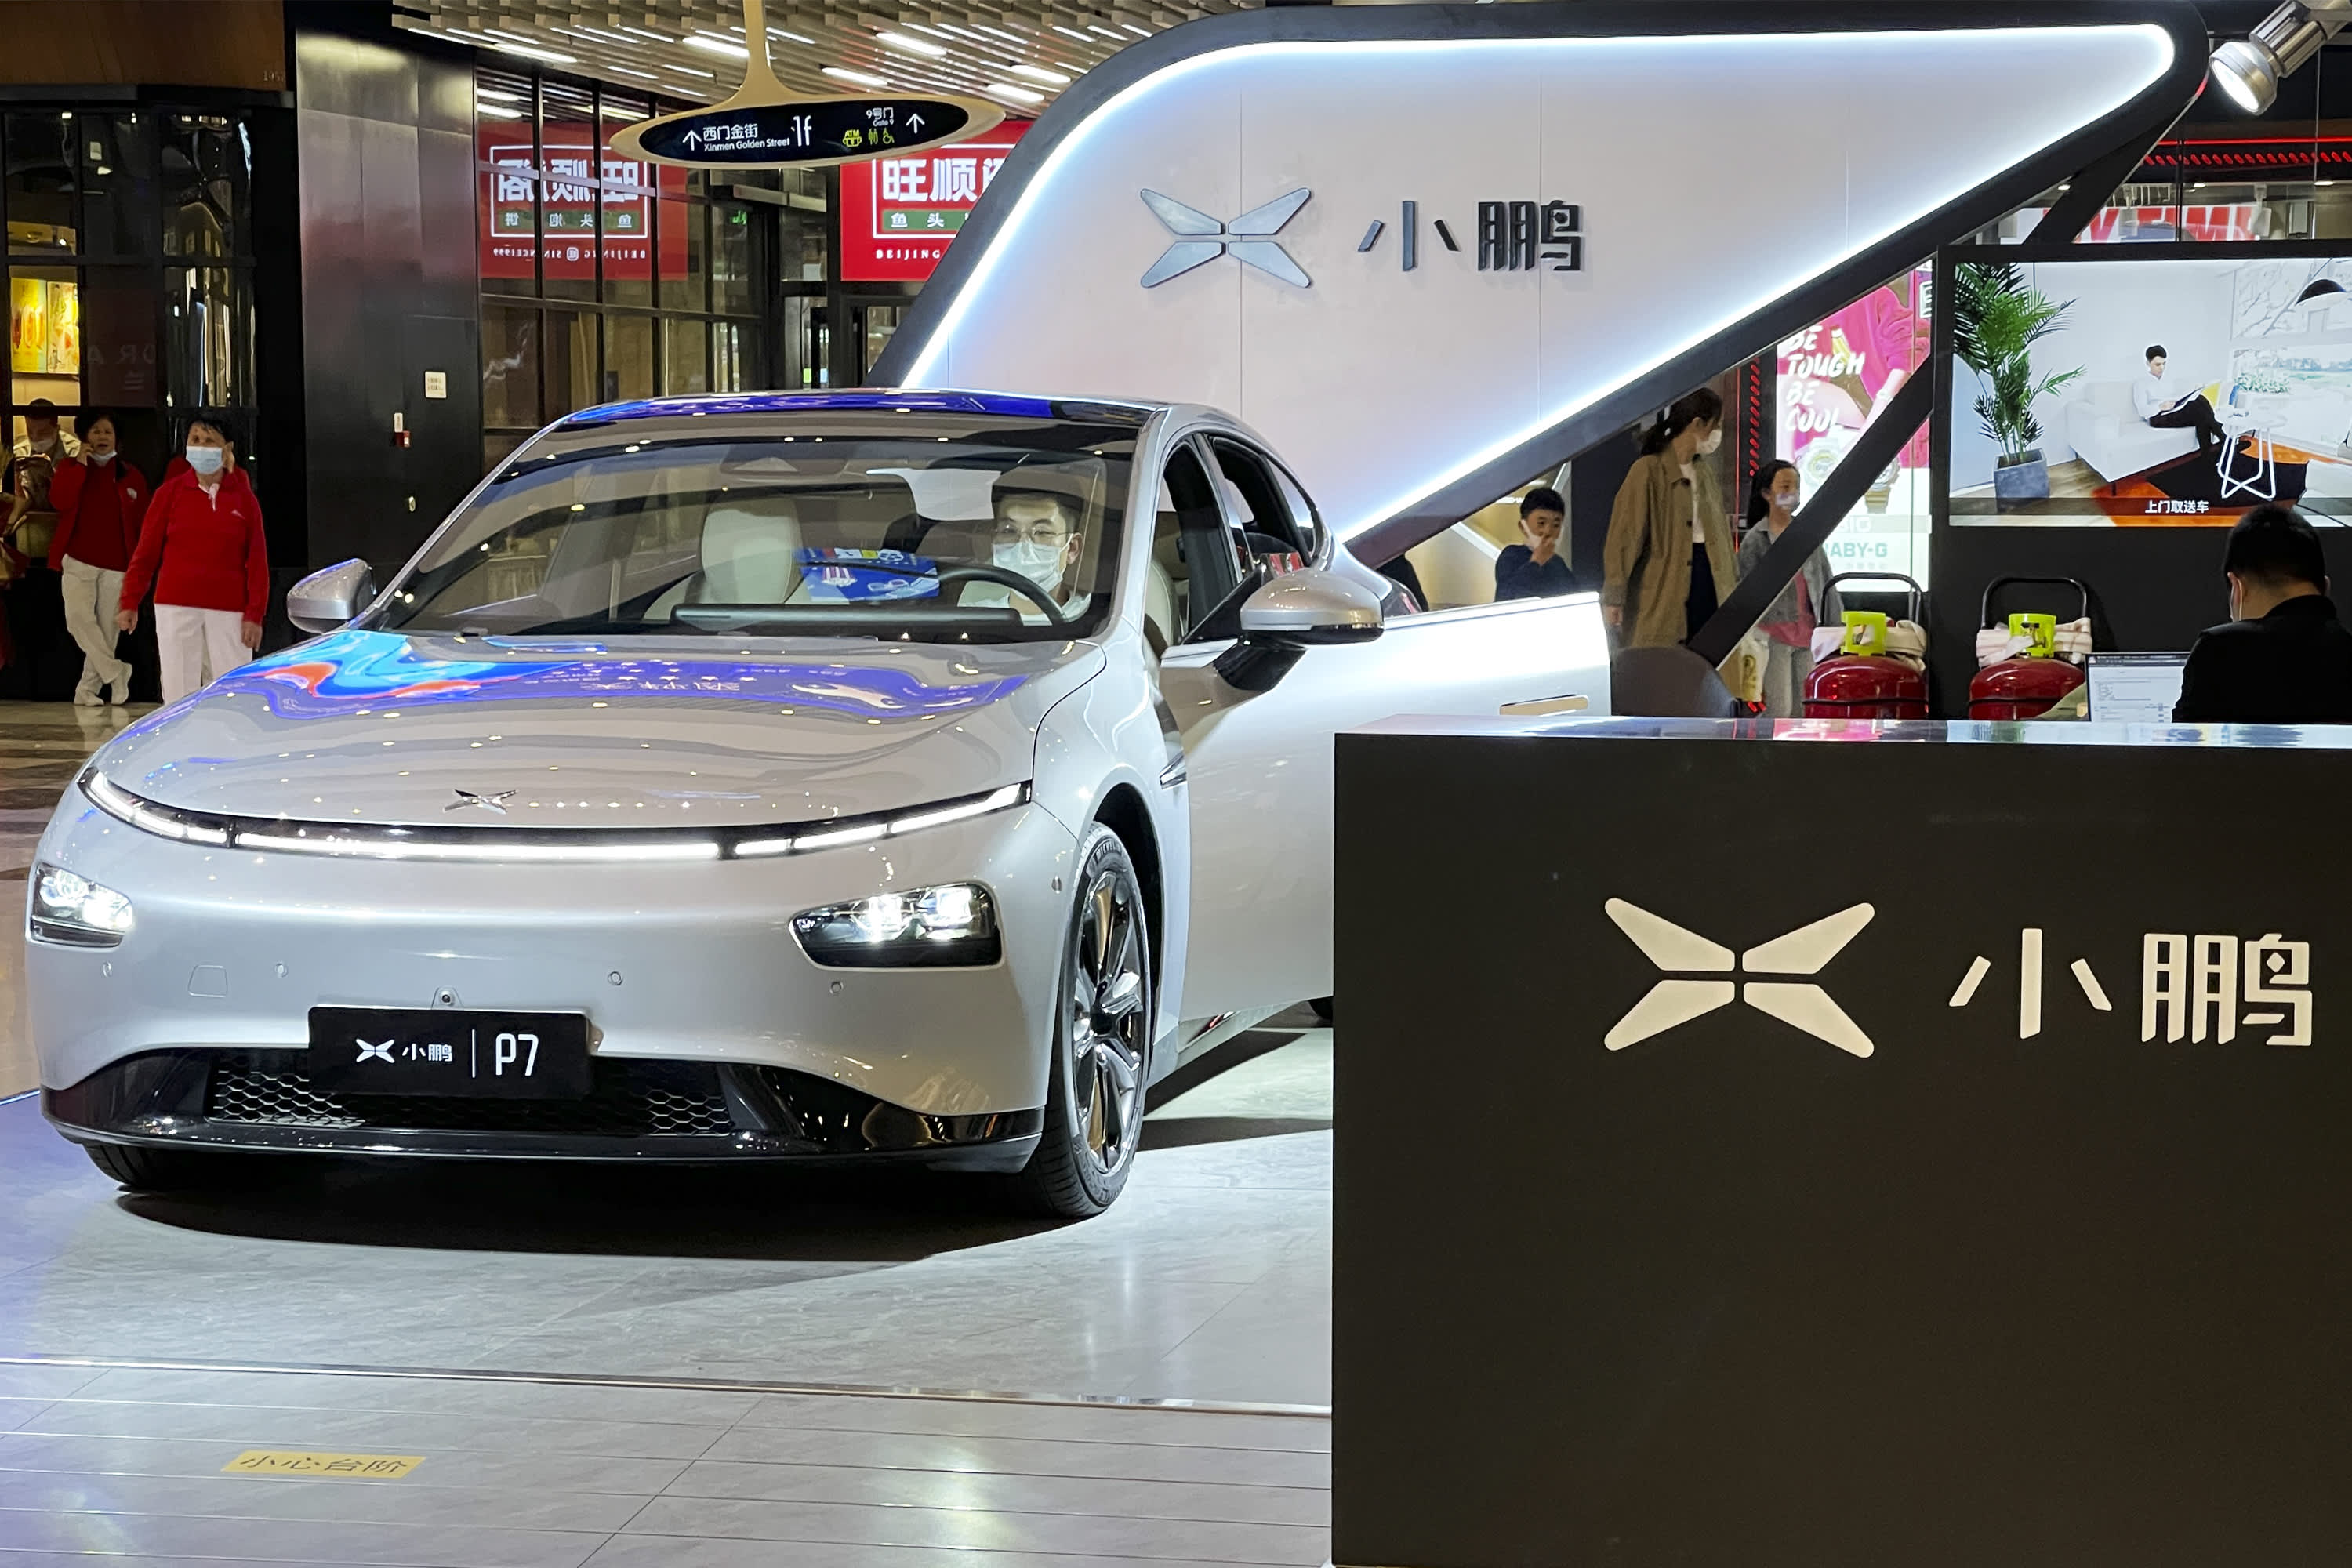 China’s Xpeng Motors to raise up to $2 billion in Hong Kong IPO